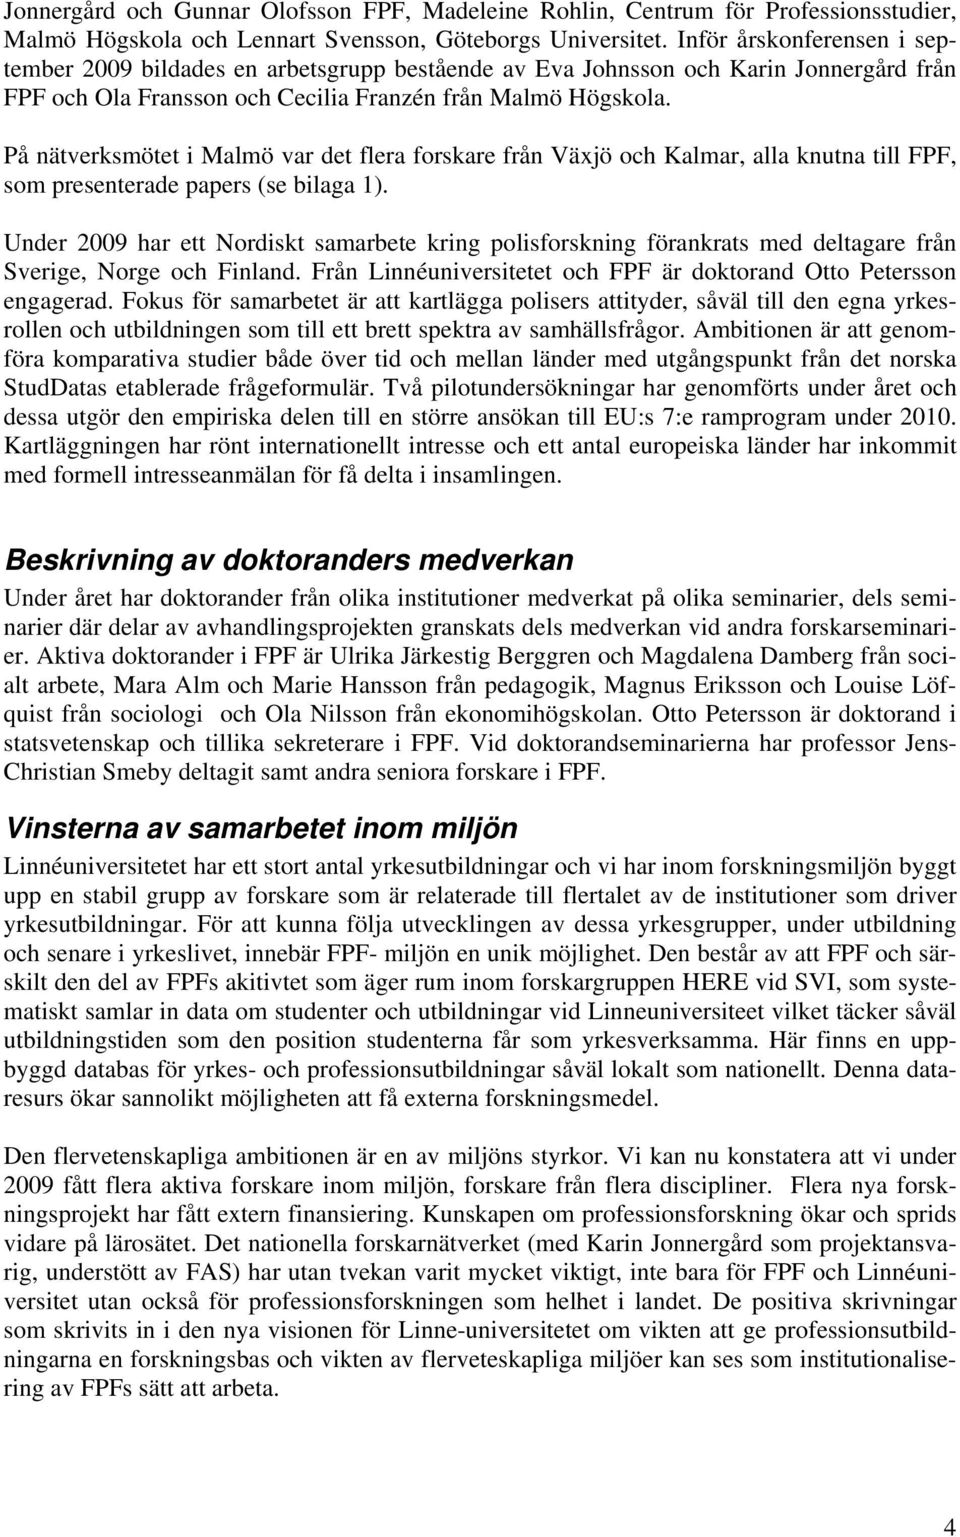 På nätverksmötet i Malmö var det flera forskare från Växjö och Kalmar, alla knutna till FPF, som presenterade papers (se bilaga 1).